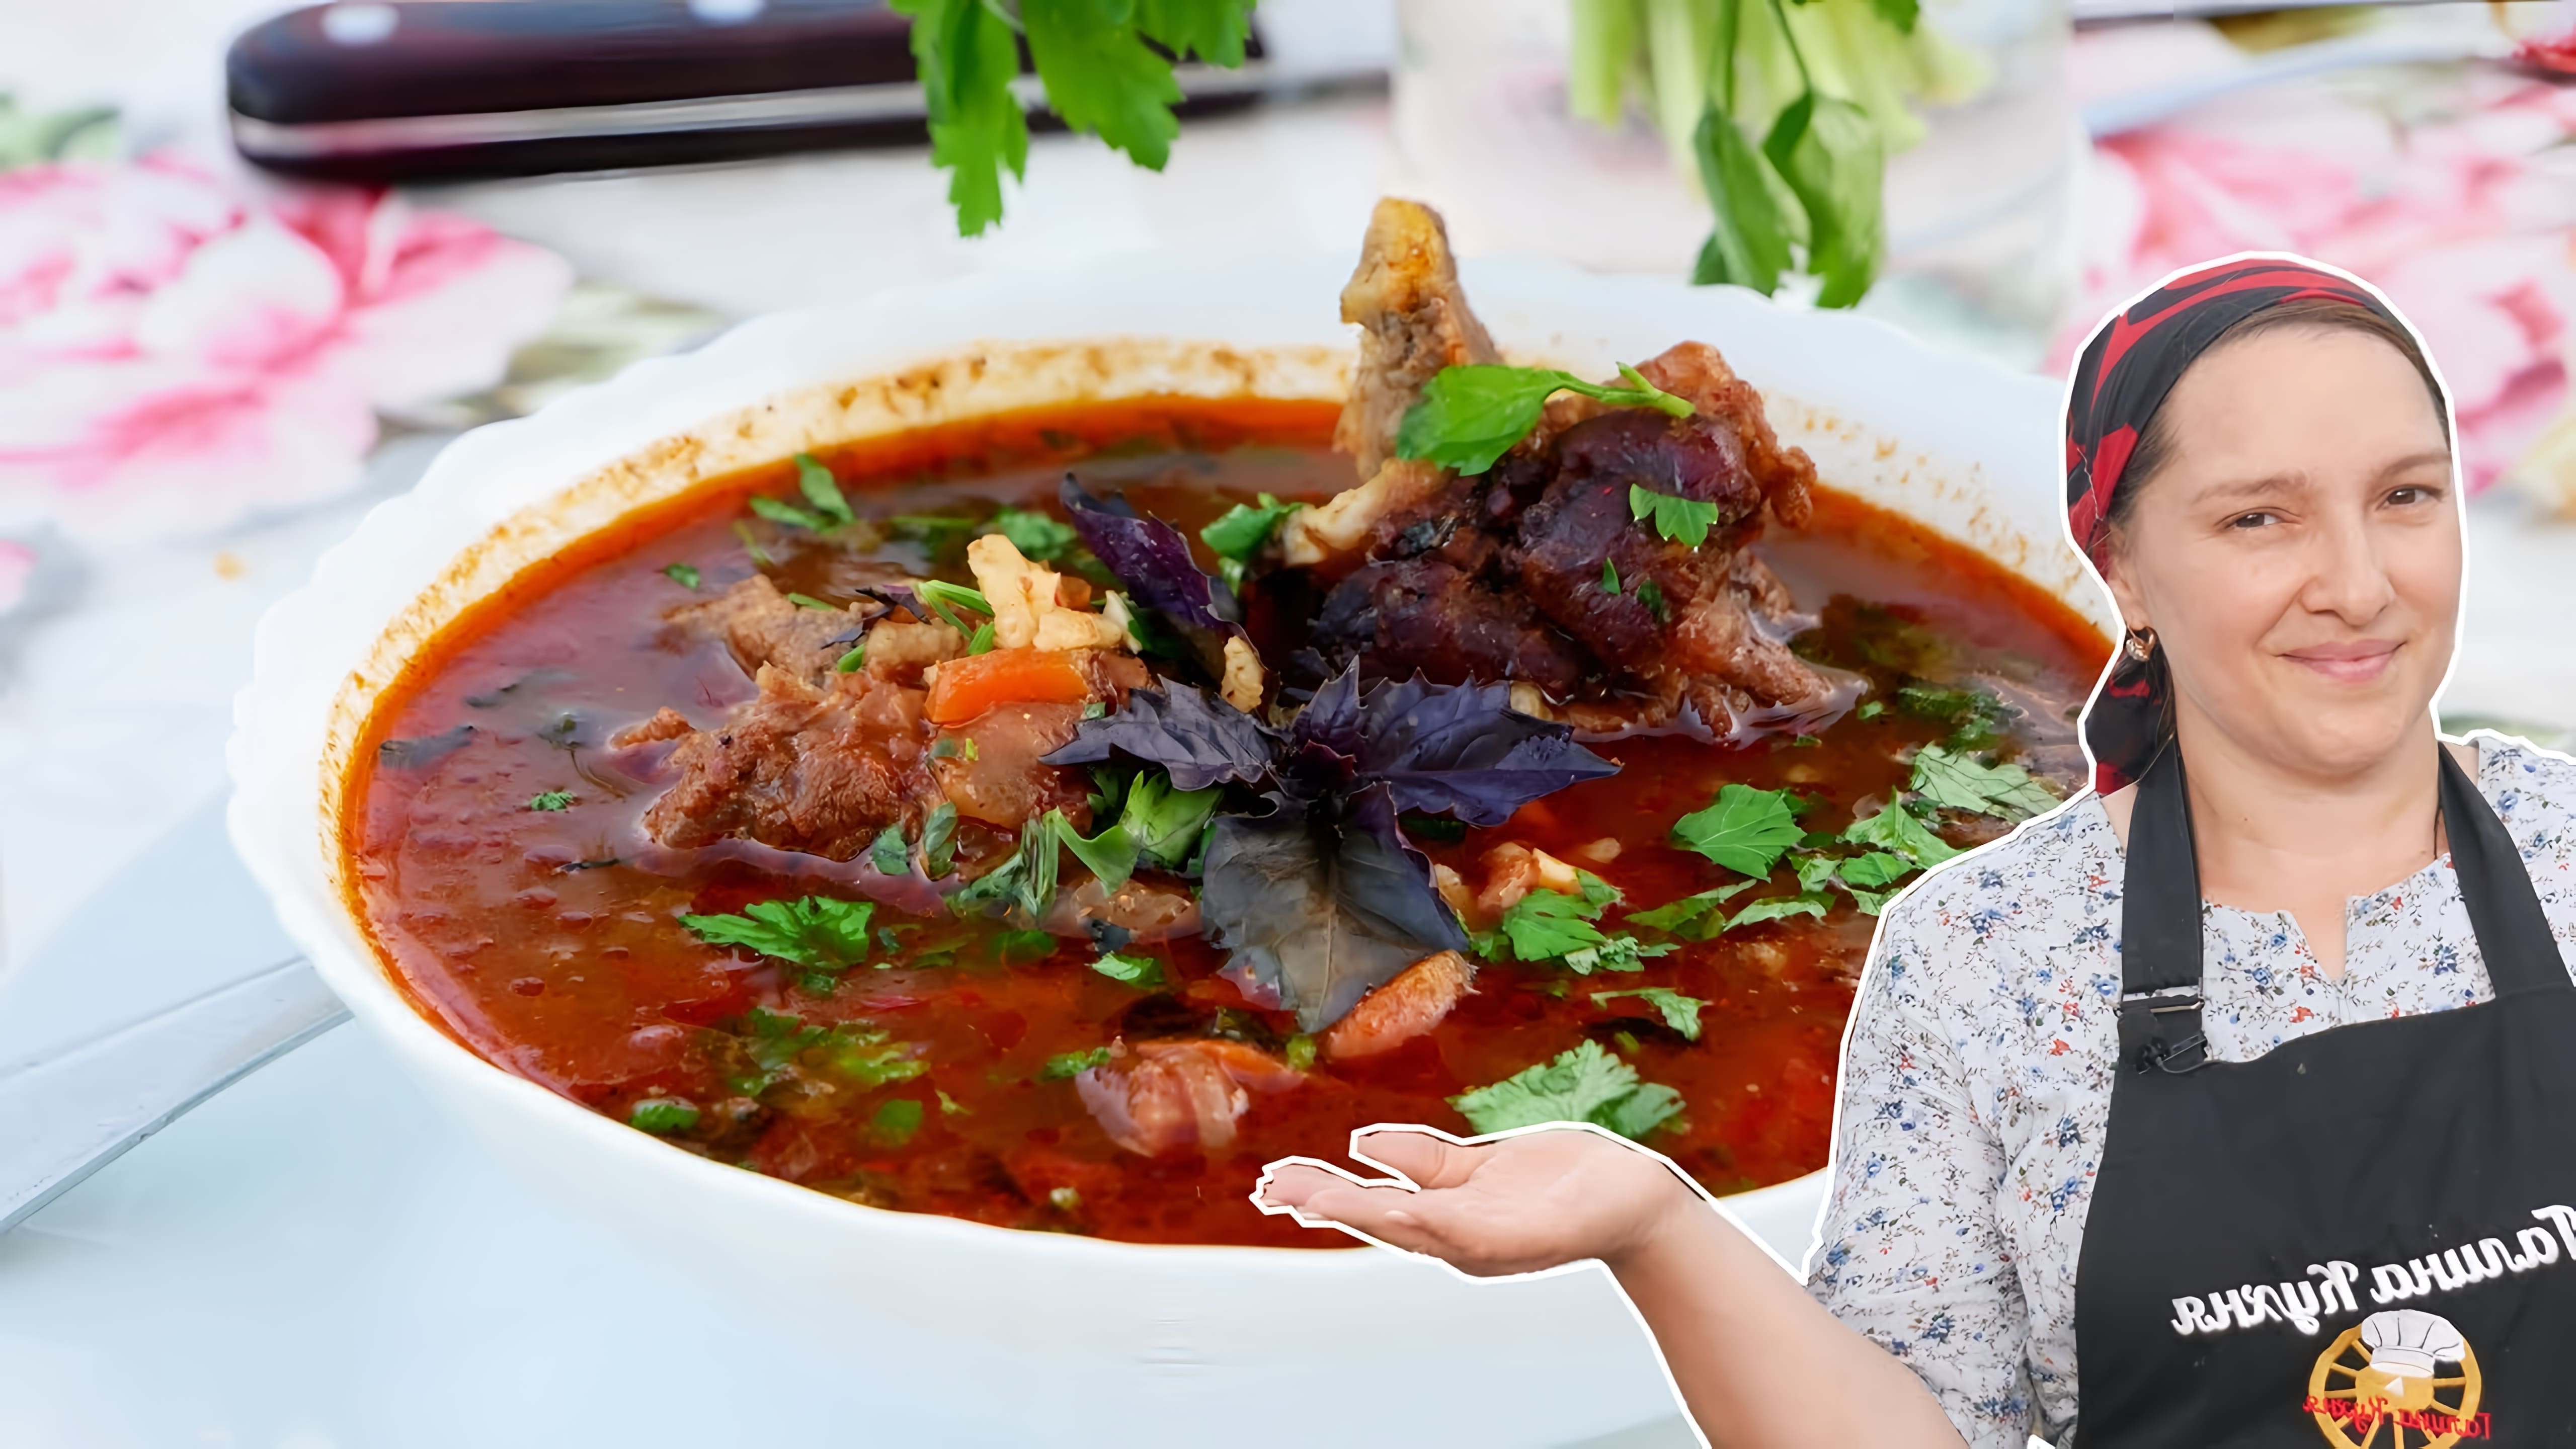 В этом видео демонстрируется процесс приготовления вкусного супа из говядины по-кавказски